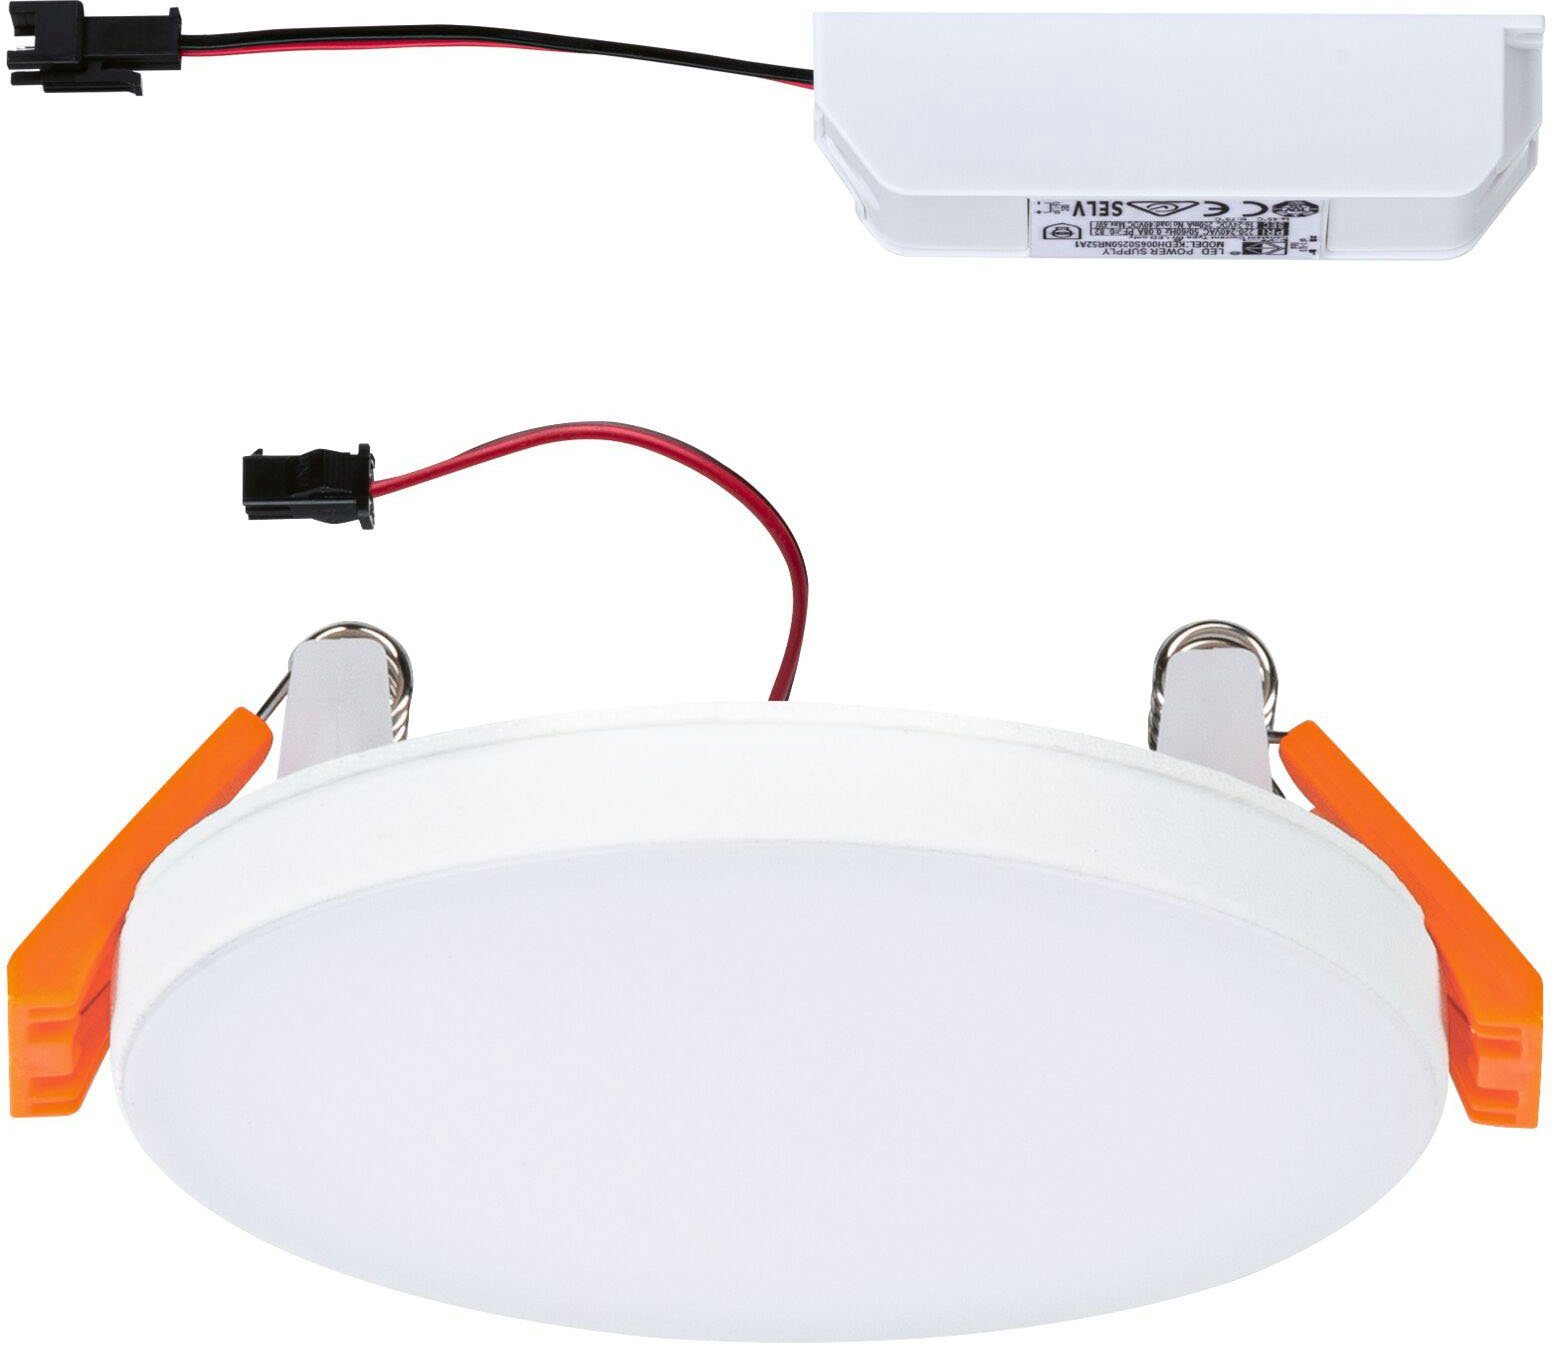 Paulmann Edge LED Neutralweiß, LED fest 90mm rund IP44 LED 500lm 90mm 4000K Edge Einbauleuchte Weiß, Einbaupanel integriert, Veluna rund Einbaupanel VariFit VariFit Veluna 4000K IP44 500lm Weiß LED